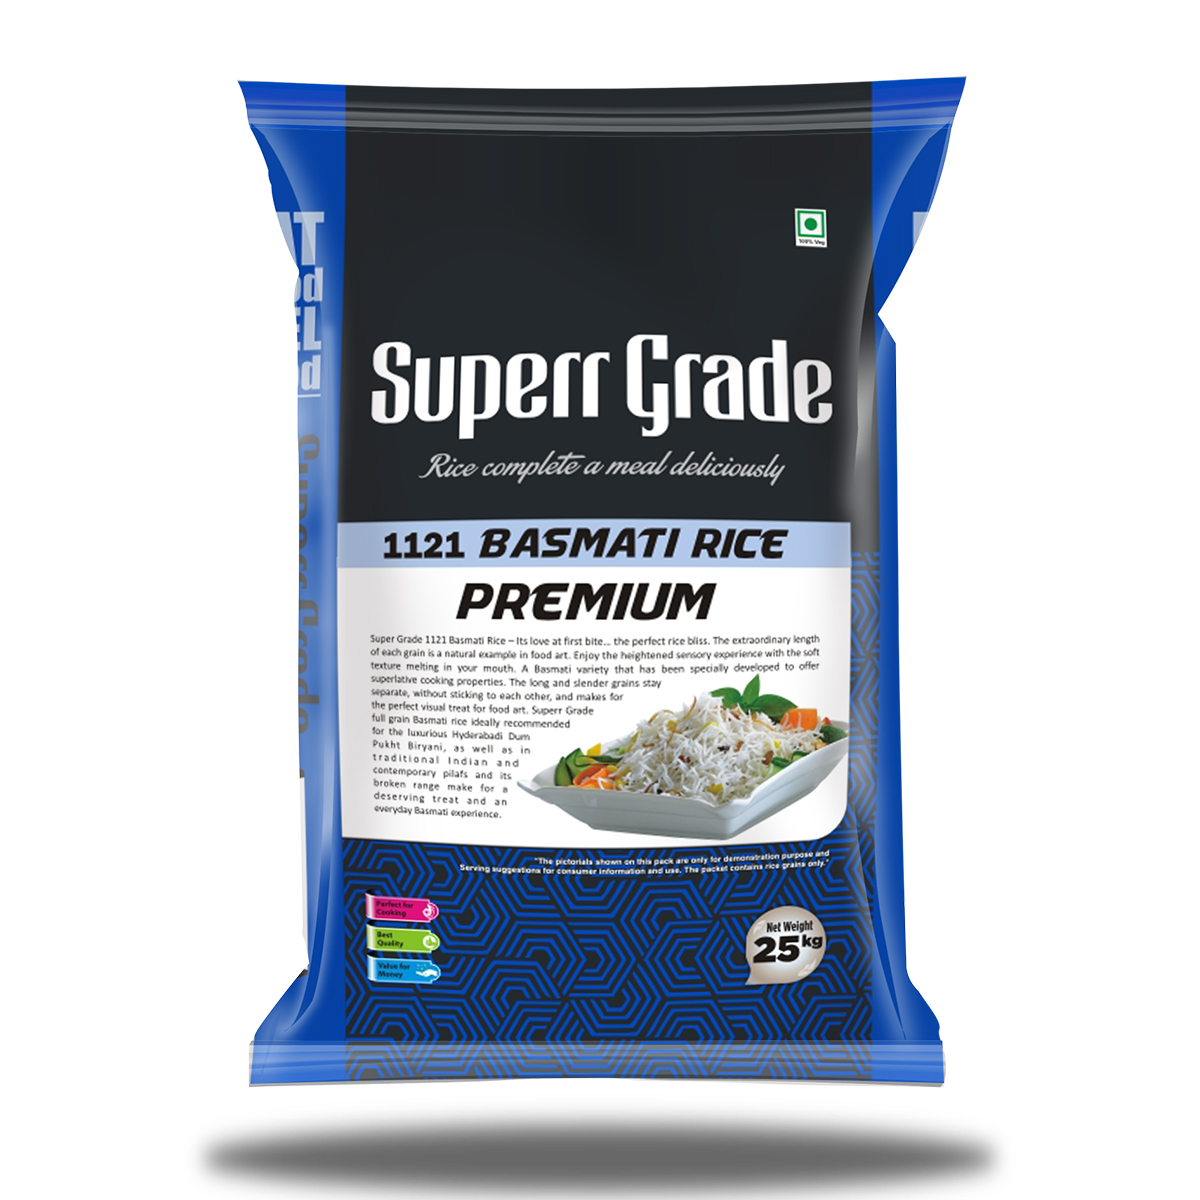 Super Grade Premium